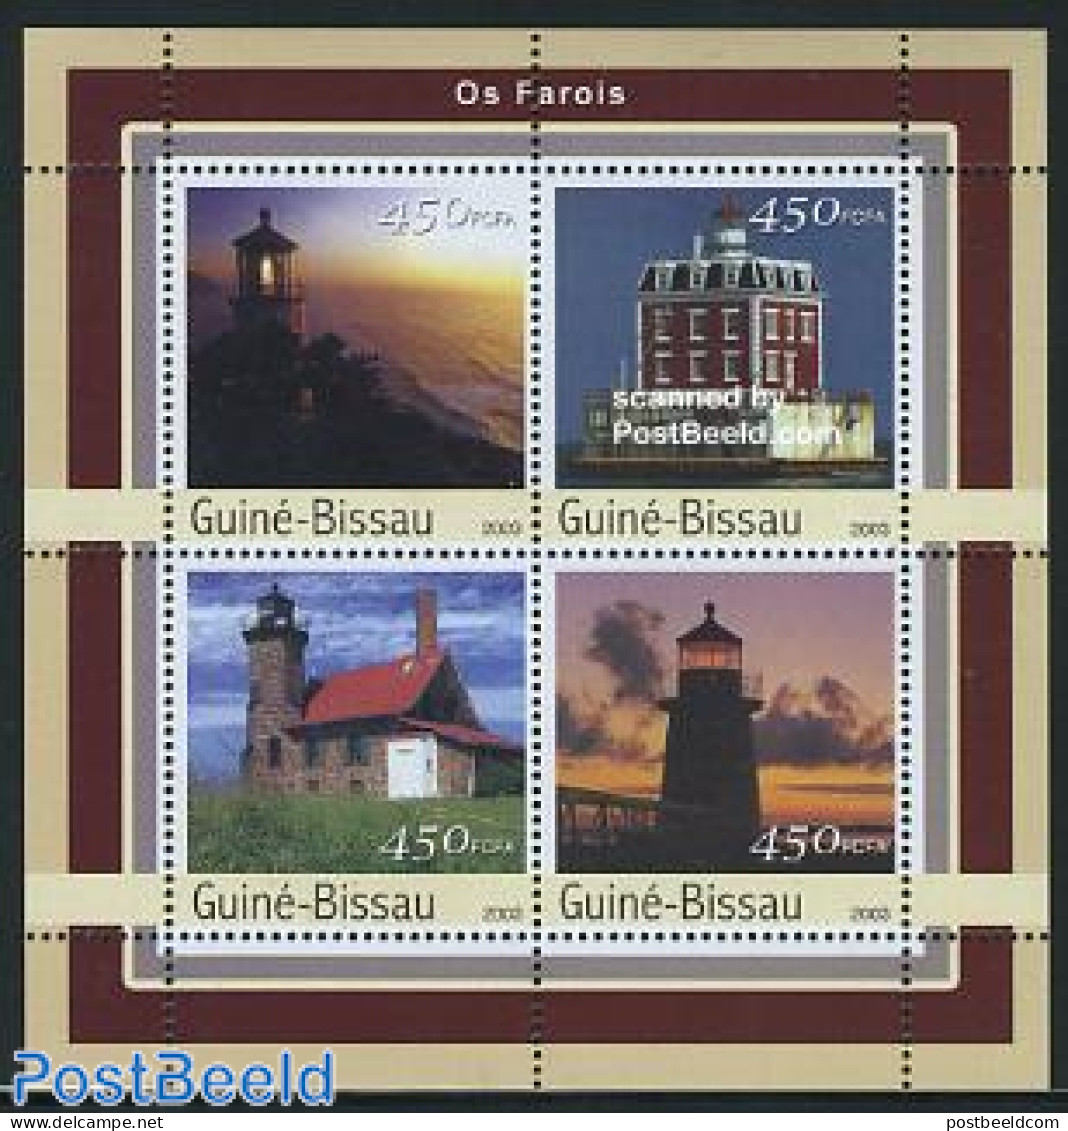 Guinea Bissau 2003 Lighthouses 4v M/s, Mint NH, Various - Lighthouses & Safety At Sea - Lighthouses